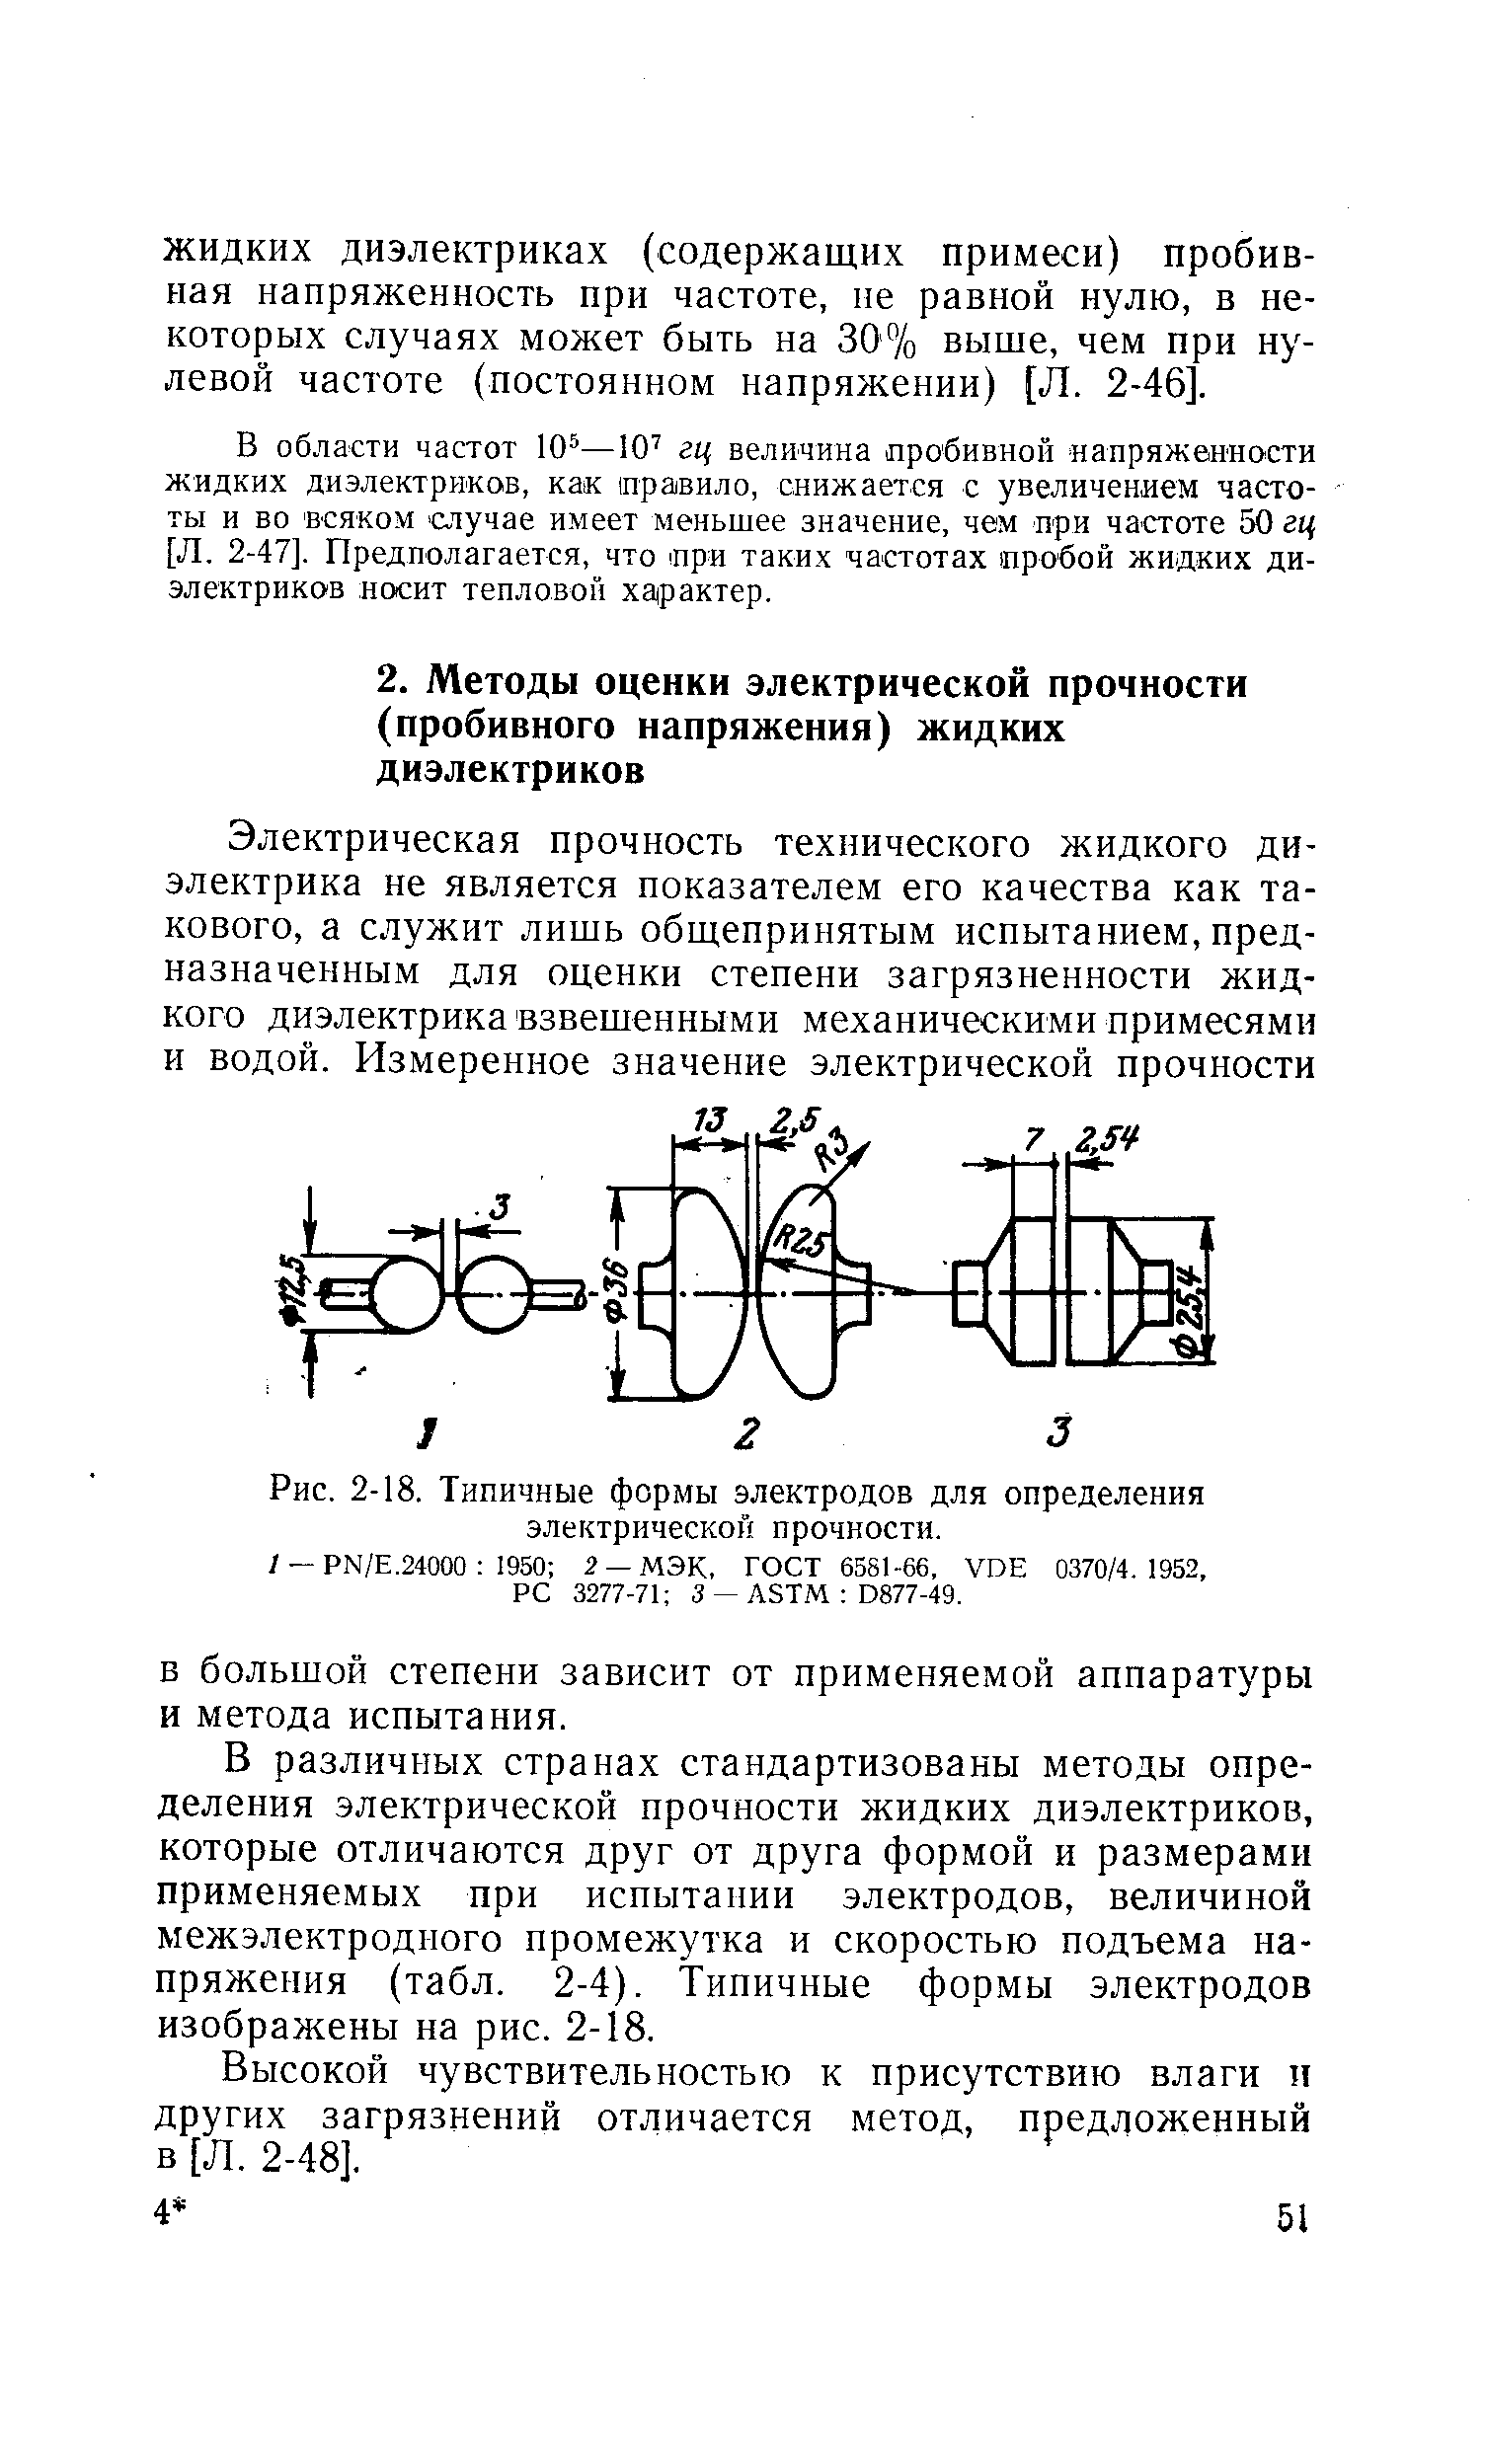 Рис. 2-18. Типичные формы электродов для определения электрической прочности.
